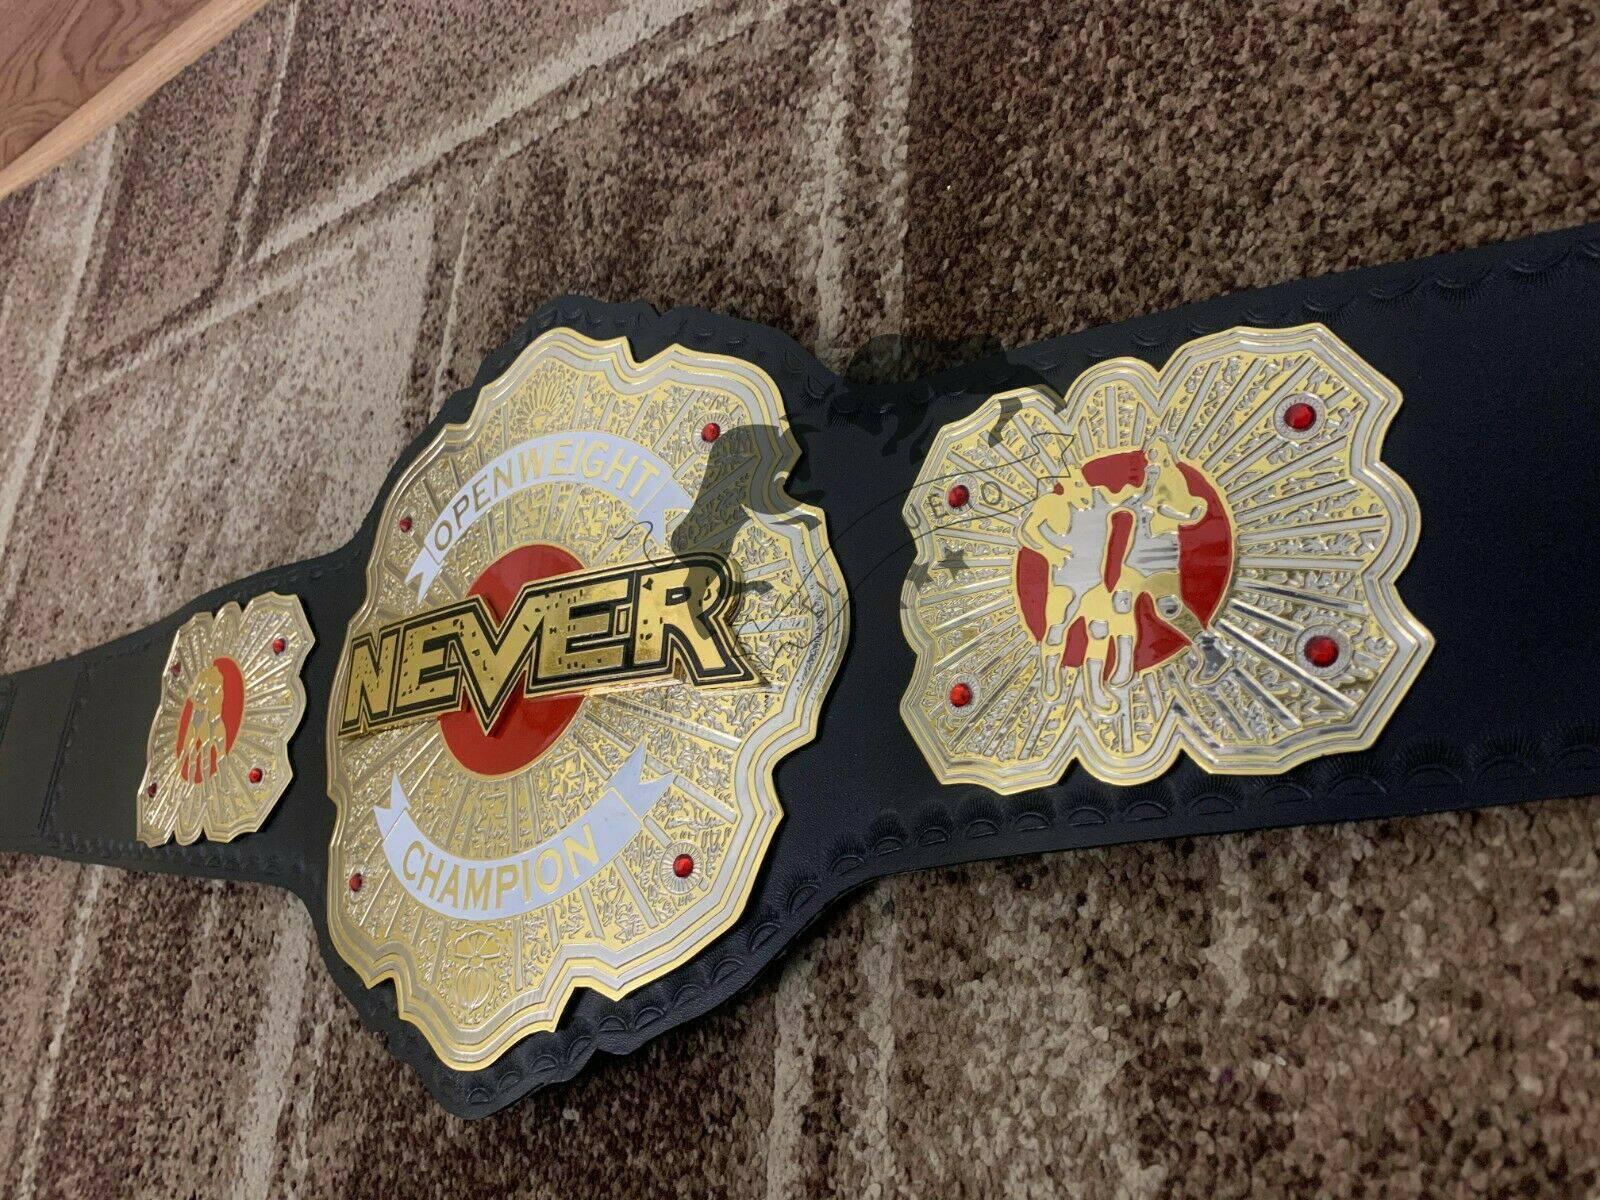 NEVER OPENWEIGHT Championship Belt - Zees Belts